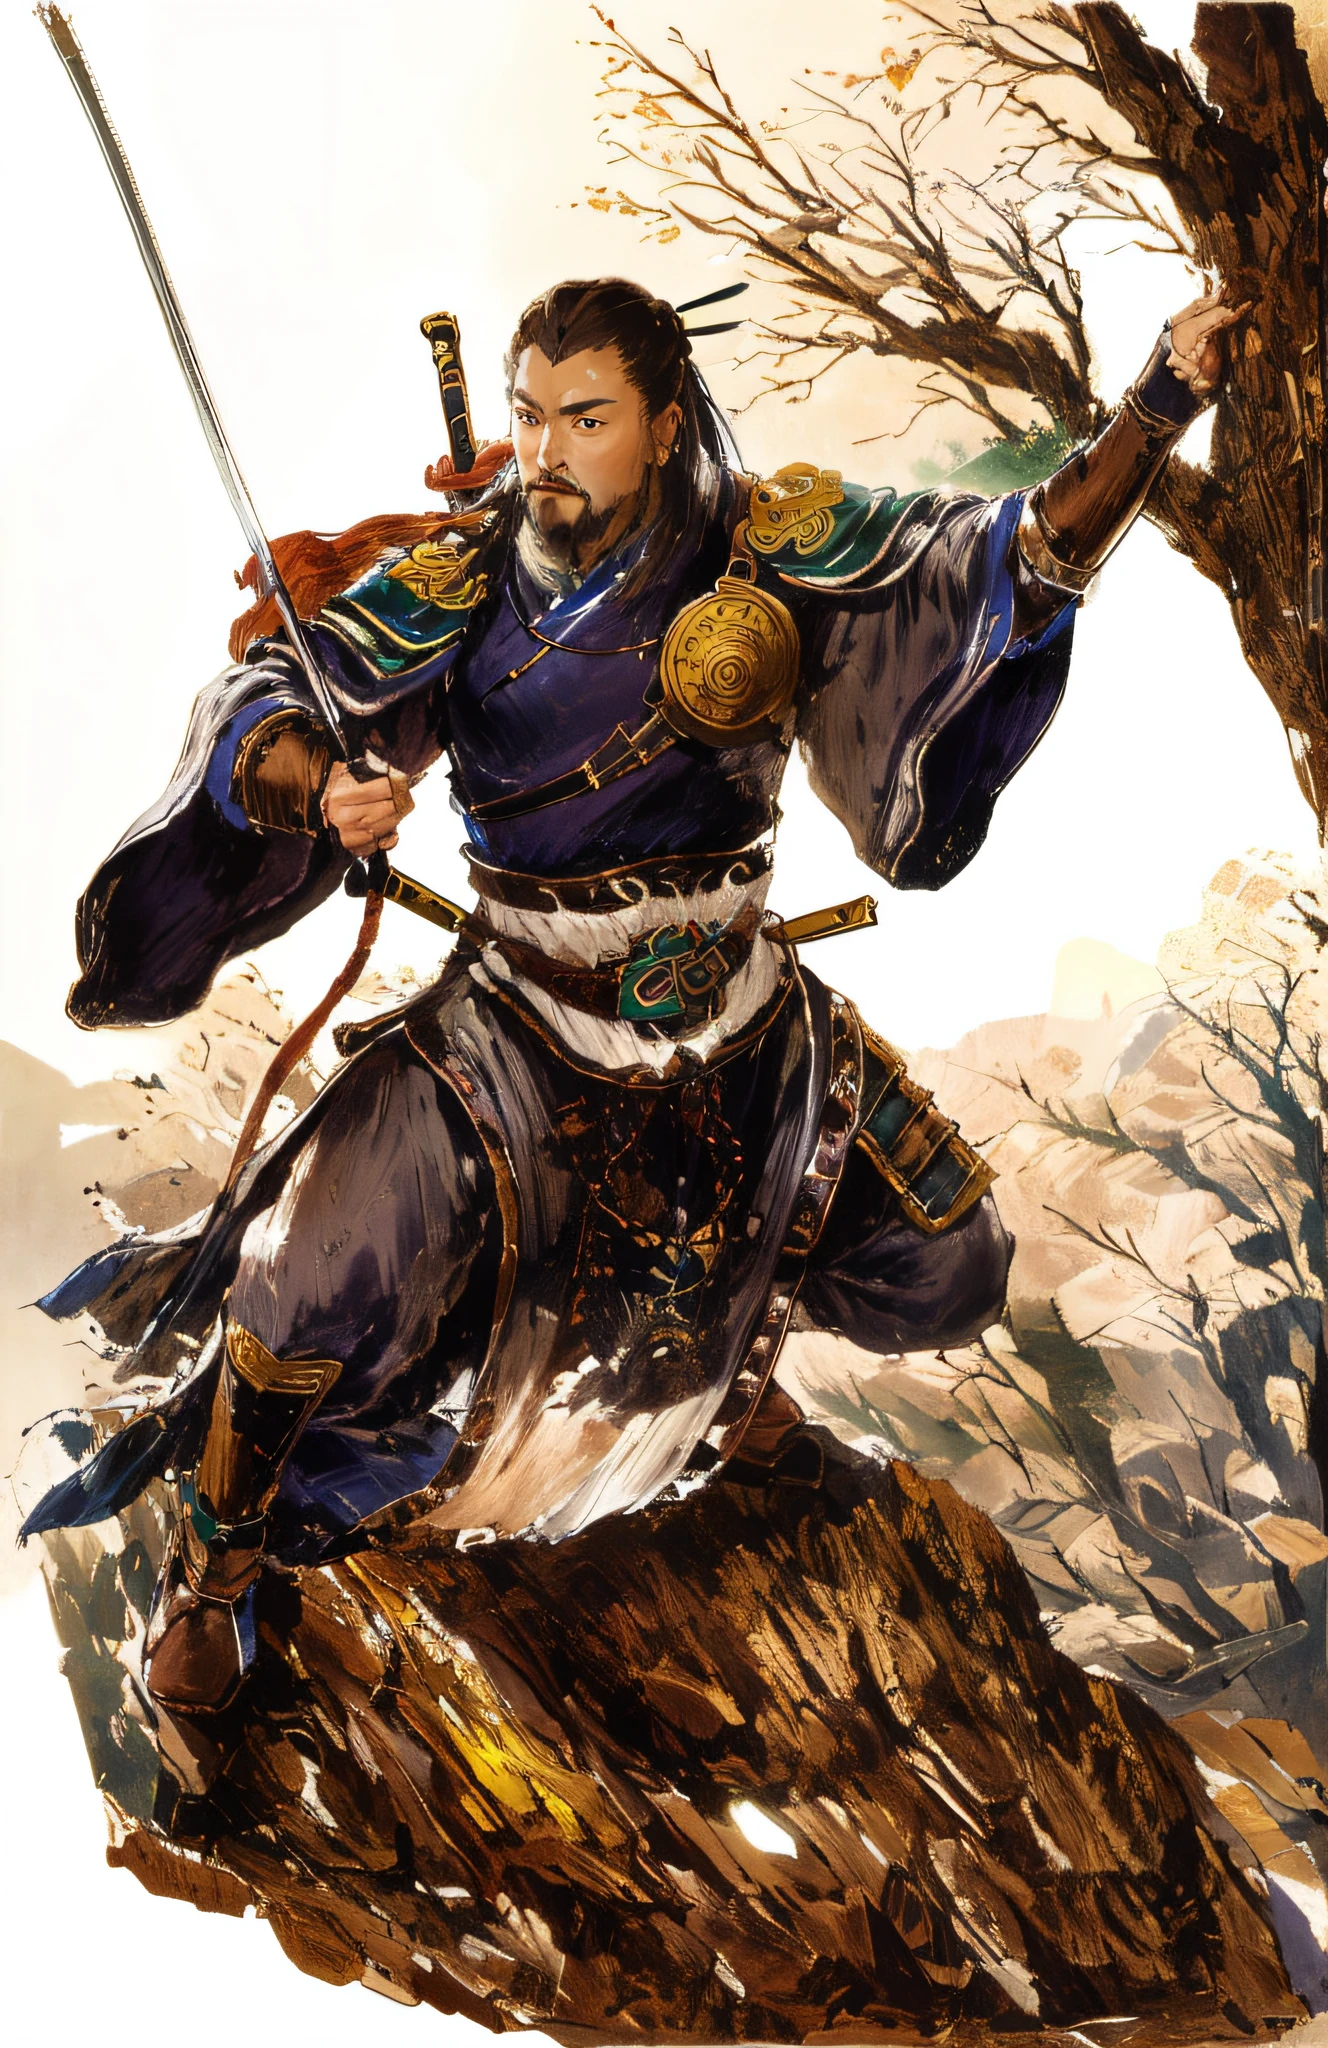 Dessine-en un debout au bord d&#39;une falaise，Un guerrier de la dynastie Song grimpant avec une corde, Portant une épée guerrier chinois, illustration épique en couleur, Inspiré par Chen Danqing, Le sentiment vient de Shen Quan, Guan Yu, Inspiré par De Dunbon, inspiré par Hu Zaobin, Inspiré par Zhu Derun, Inspiré par Huang Shen, inspiré par Li Rongjin, Inspiré par Shen Zhou，inspiré par Yang Borun, dessin de fan, par Ni Yuanlu, inspiré par Wang Jian, auteur：Chen Danqing, inspiré par Lu Zhi, auteur：Yoon Du-Seop, guerrier atlante, inspiré par Li Kan, Seigneur de guerre Tai, Les chiens fouineurs en barbares, ancien guerrier, Naranbaatar Ganbold, Bandits, Zhangfei